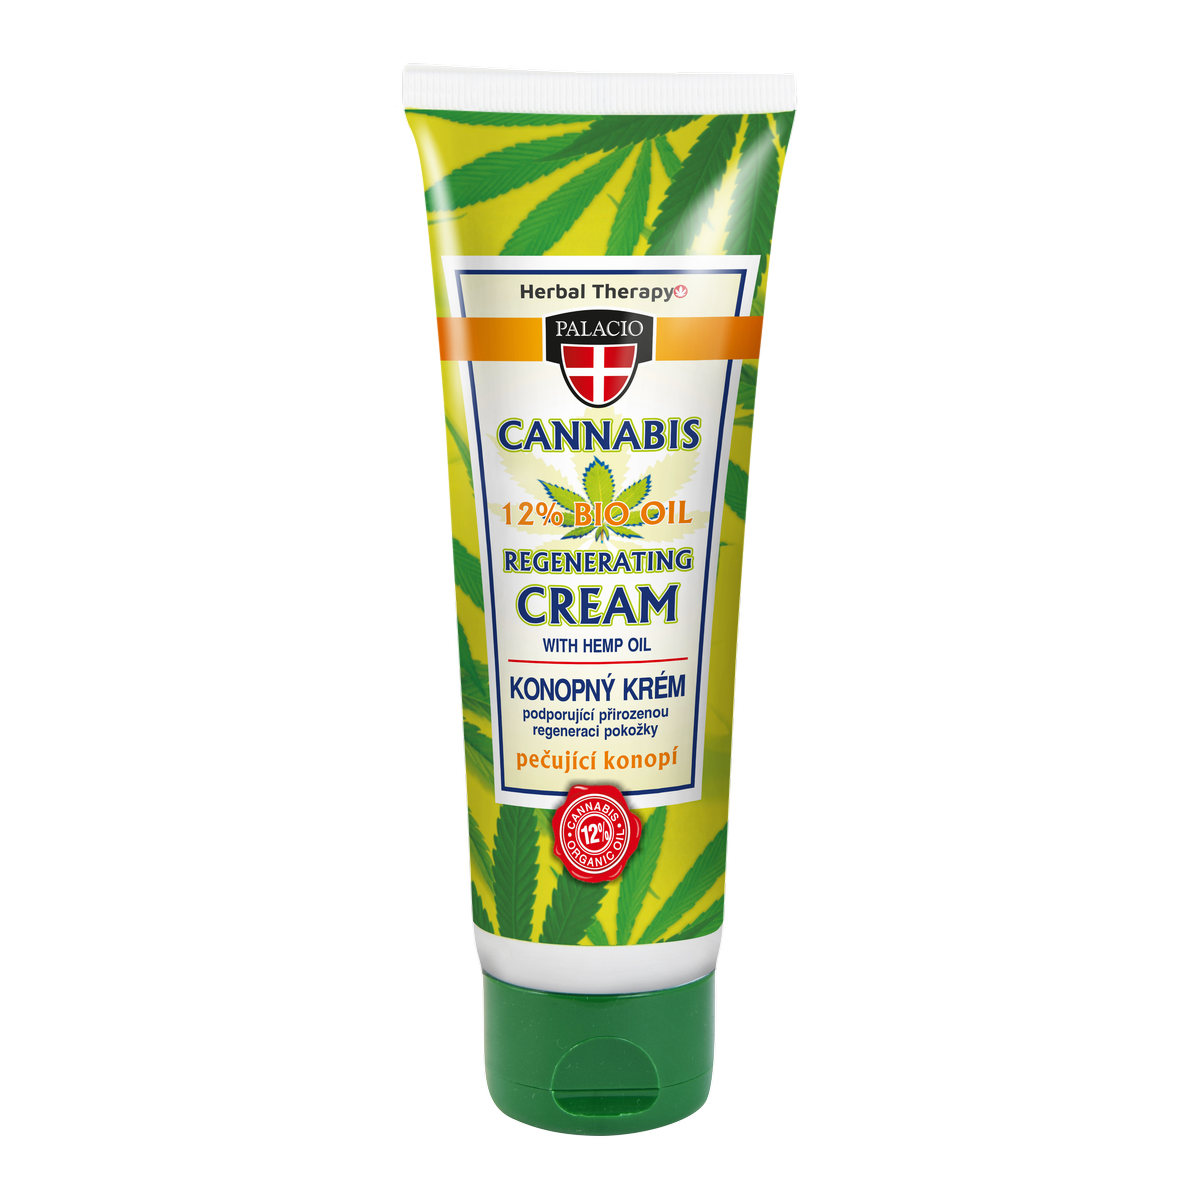 CANNABIS Hand Cream 125ml P0420 ENG WEB 43